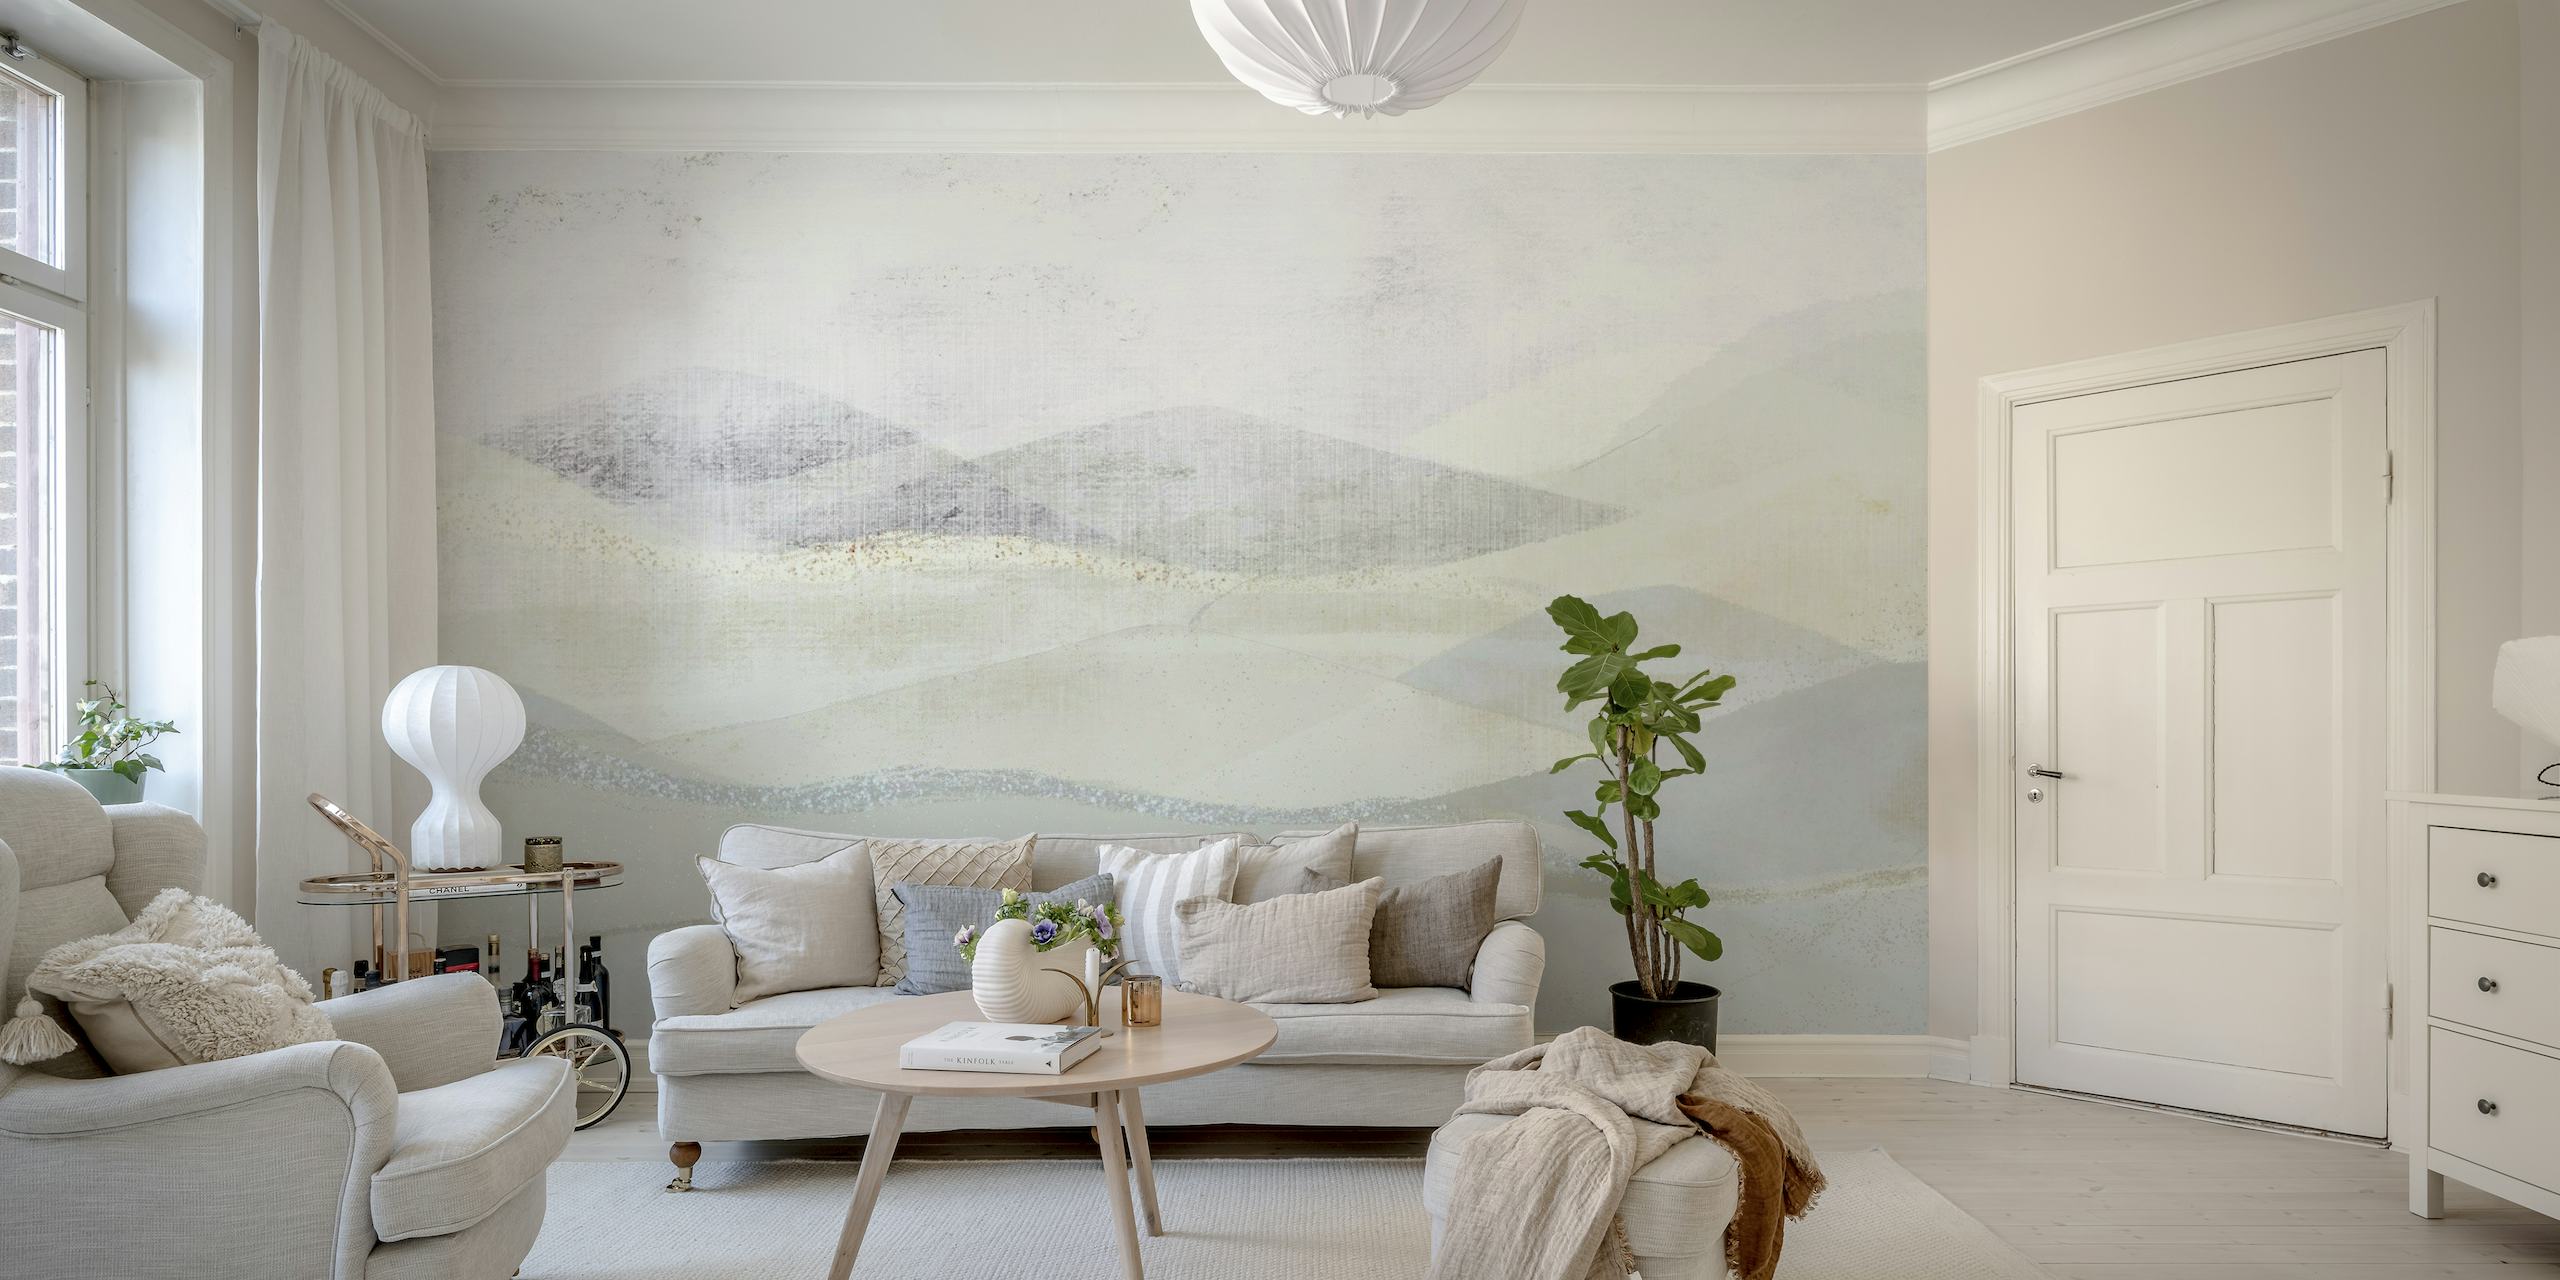 Abstraktes Wandbild mit cremigen Weiß- und sanften Grautönen, das einer frostigen Landschaft ähnelt